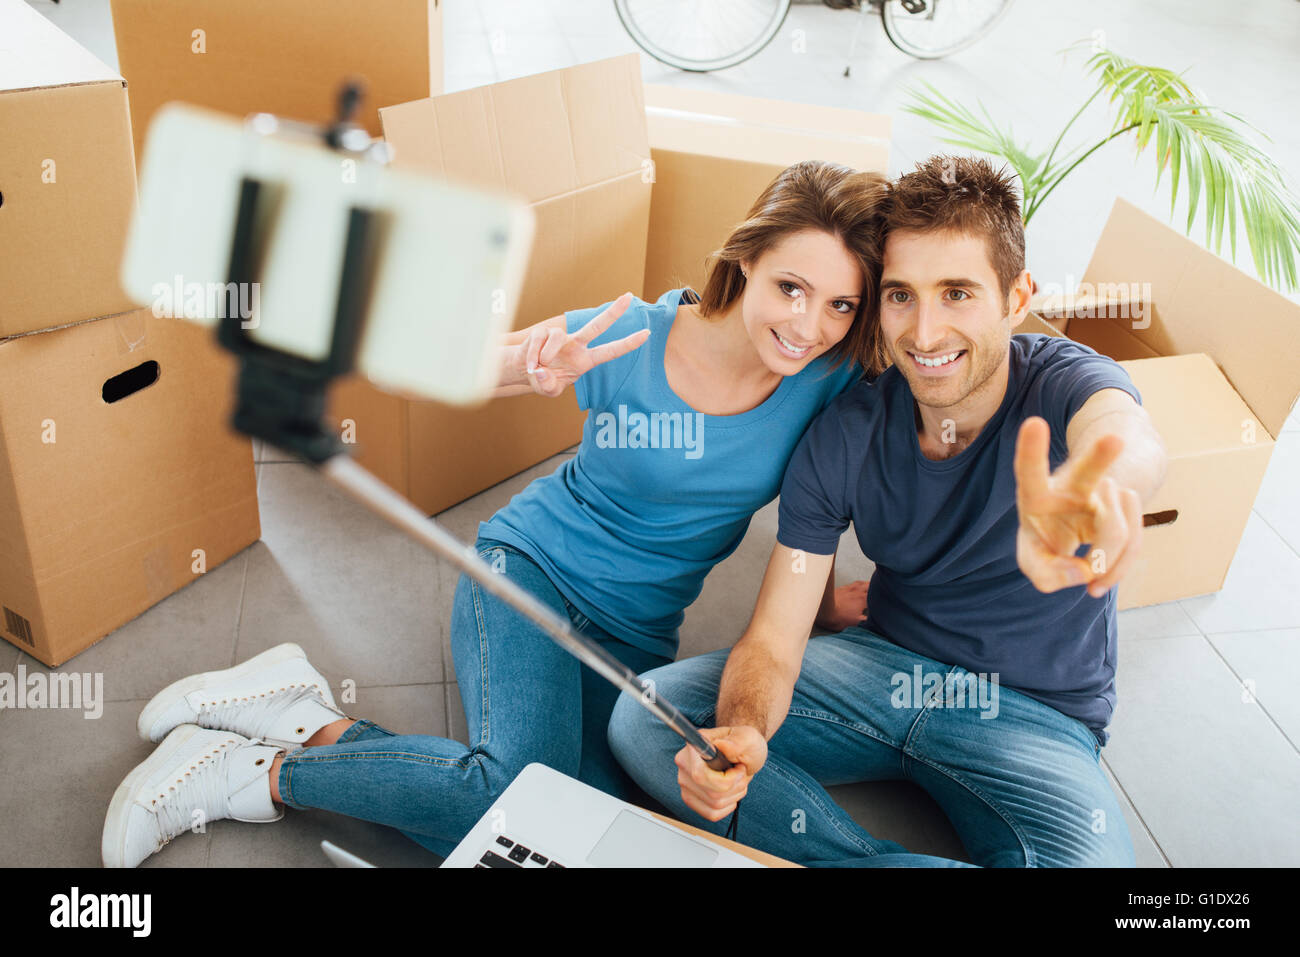 Lächelnd junges Paar sitzt auf ihren neuen Haus Boden umgeben von Kartons und nehmen Selfies mit einem Selfie-stick Stockfoto